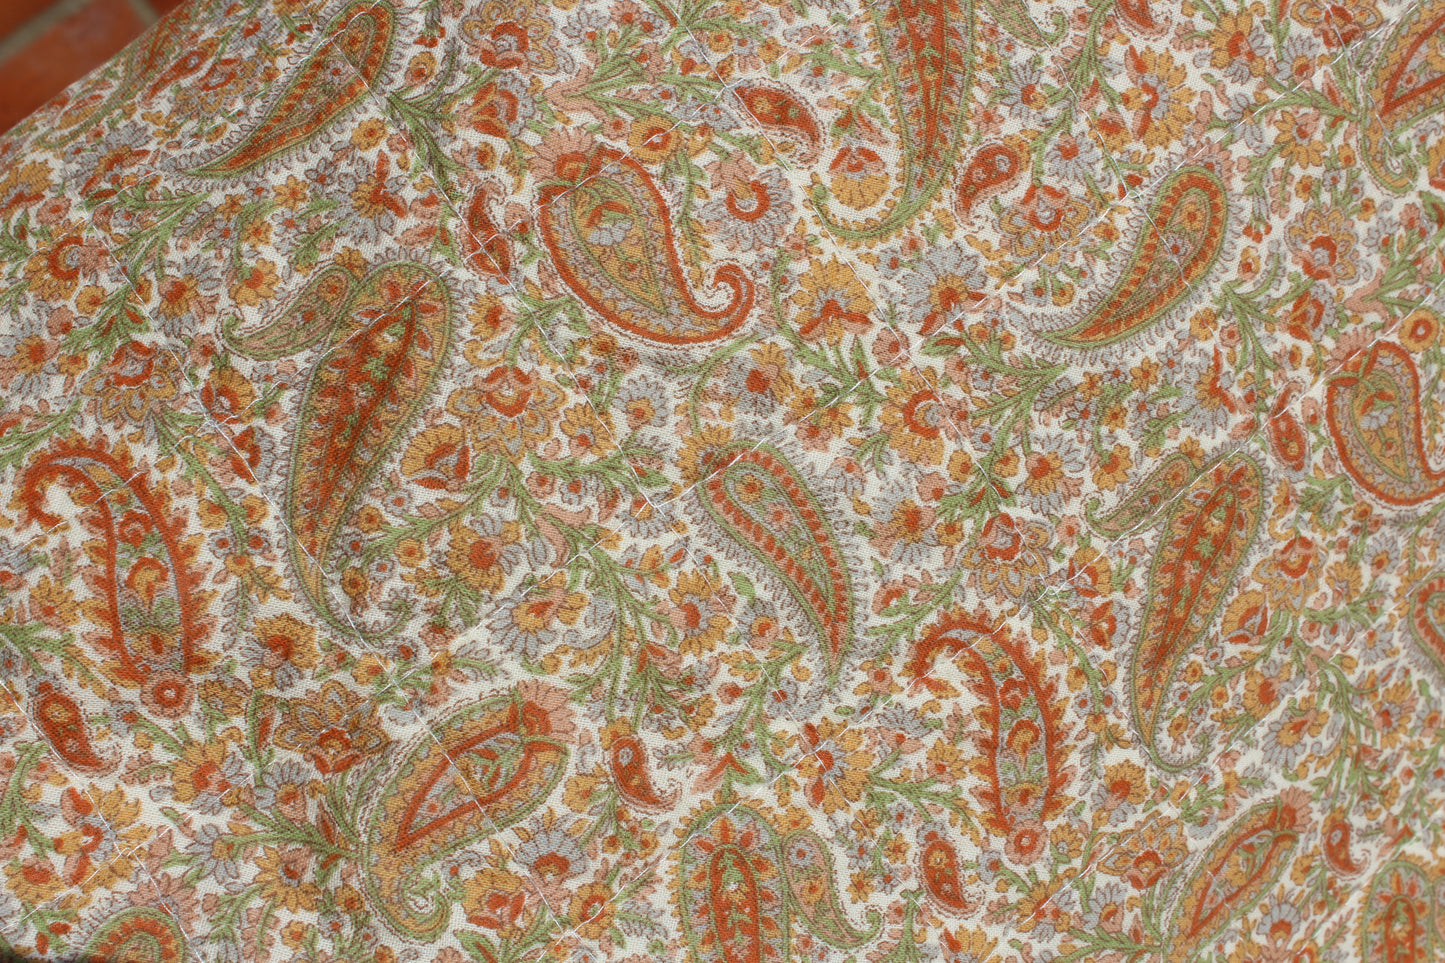 Ib Laursen - Quilt vattæppe - Paisley i grøn, gylden, rustfarver og blomstermønster